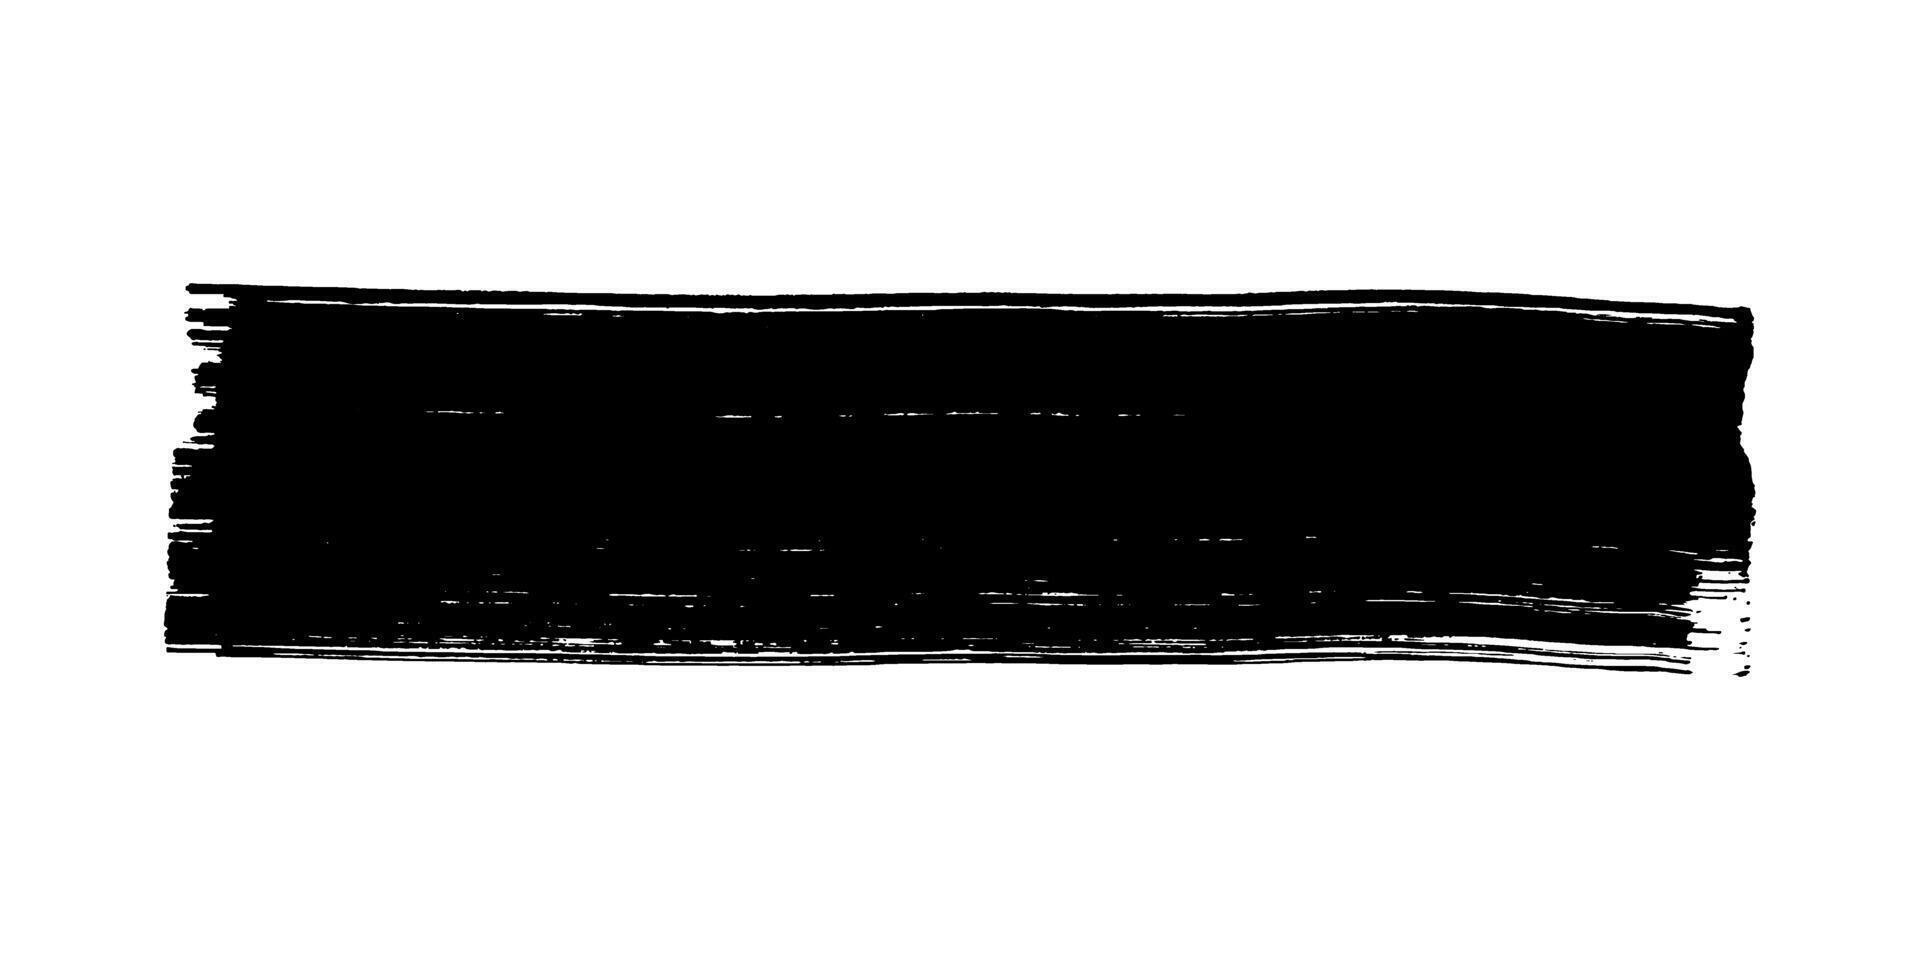 grassetto nero grunge annuncio pubblicitario elemento. inchiostro, pennello ictus isolato vettore